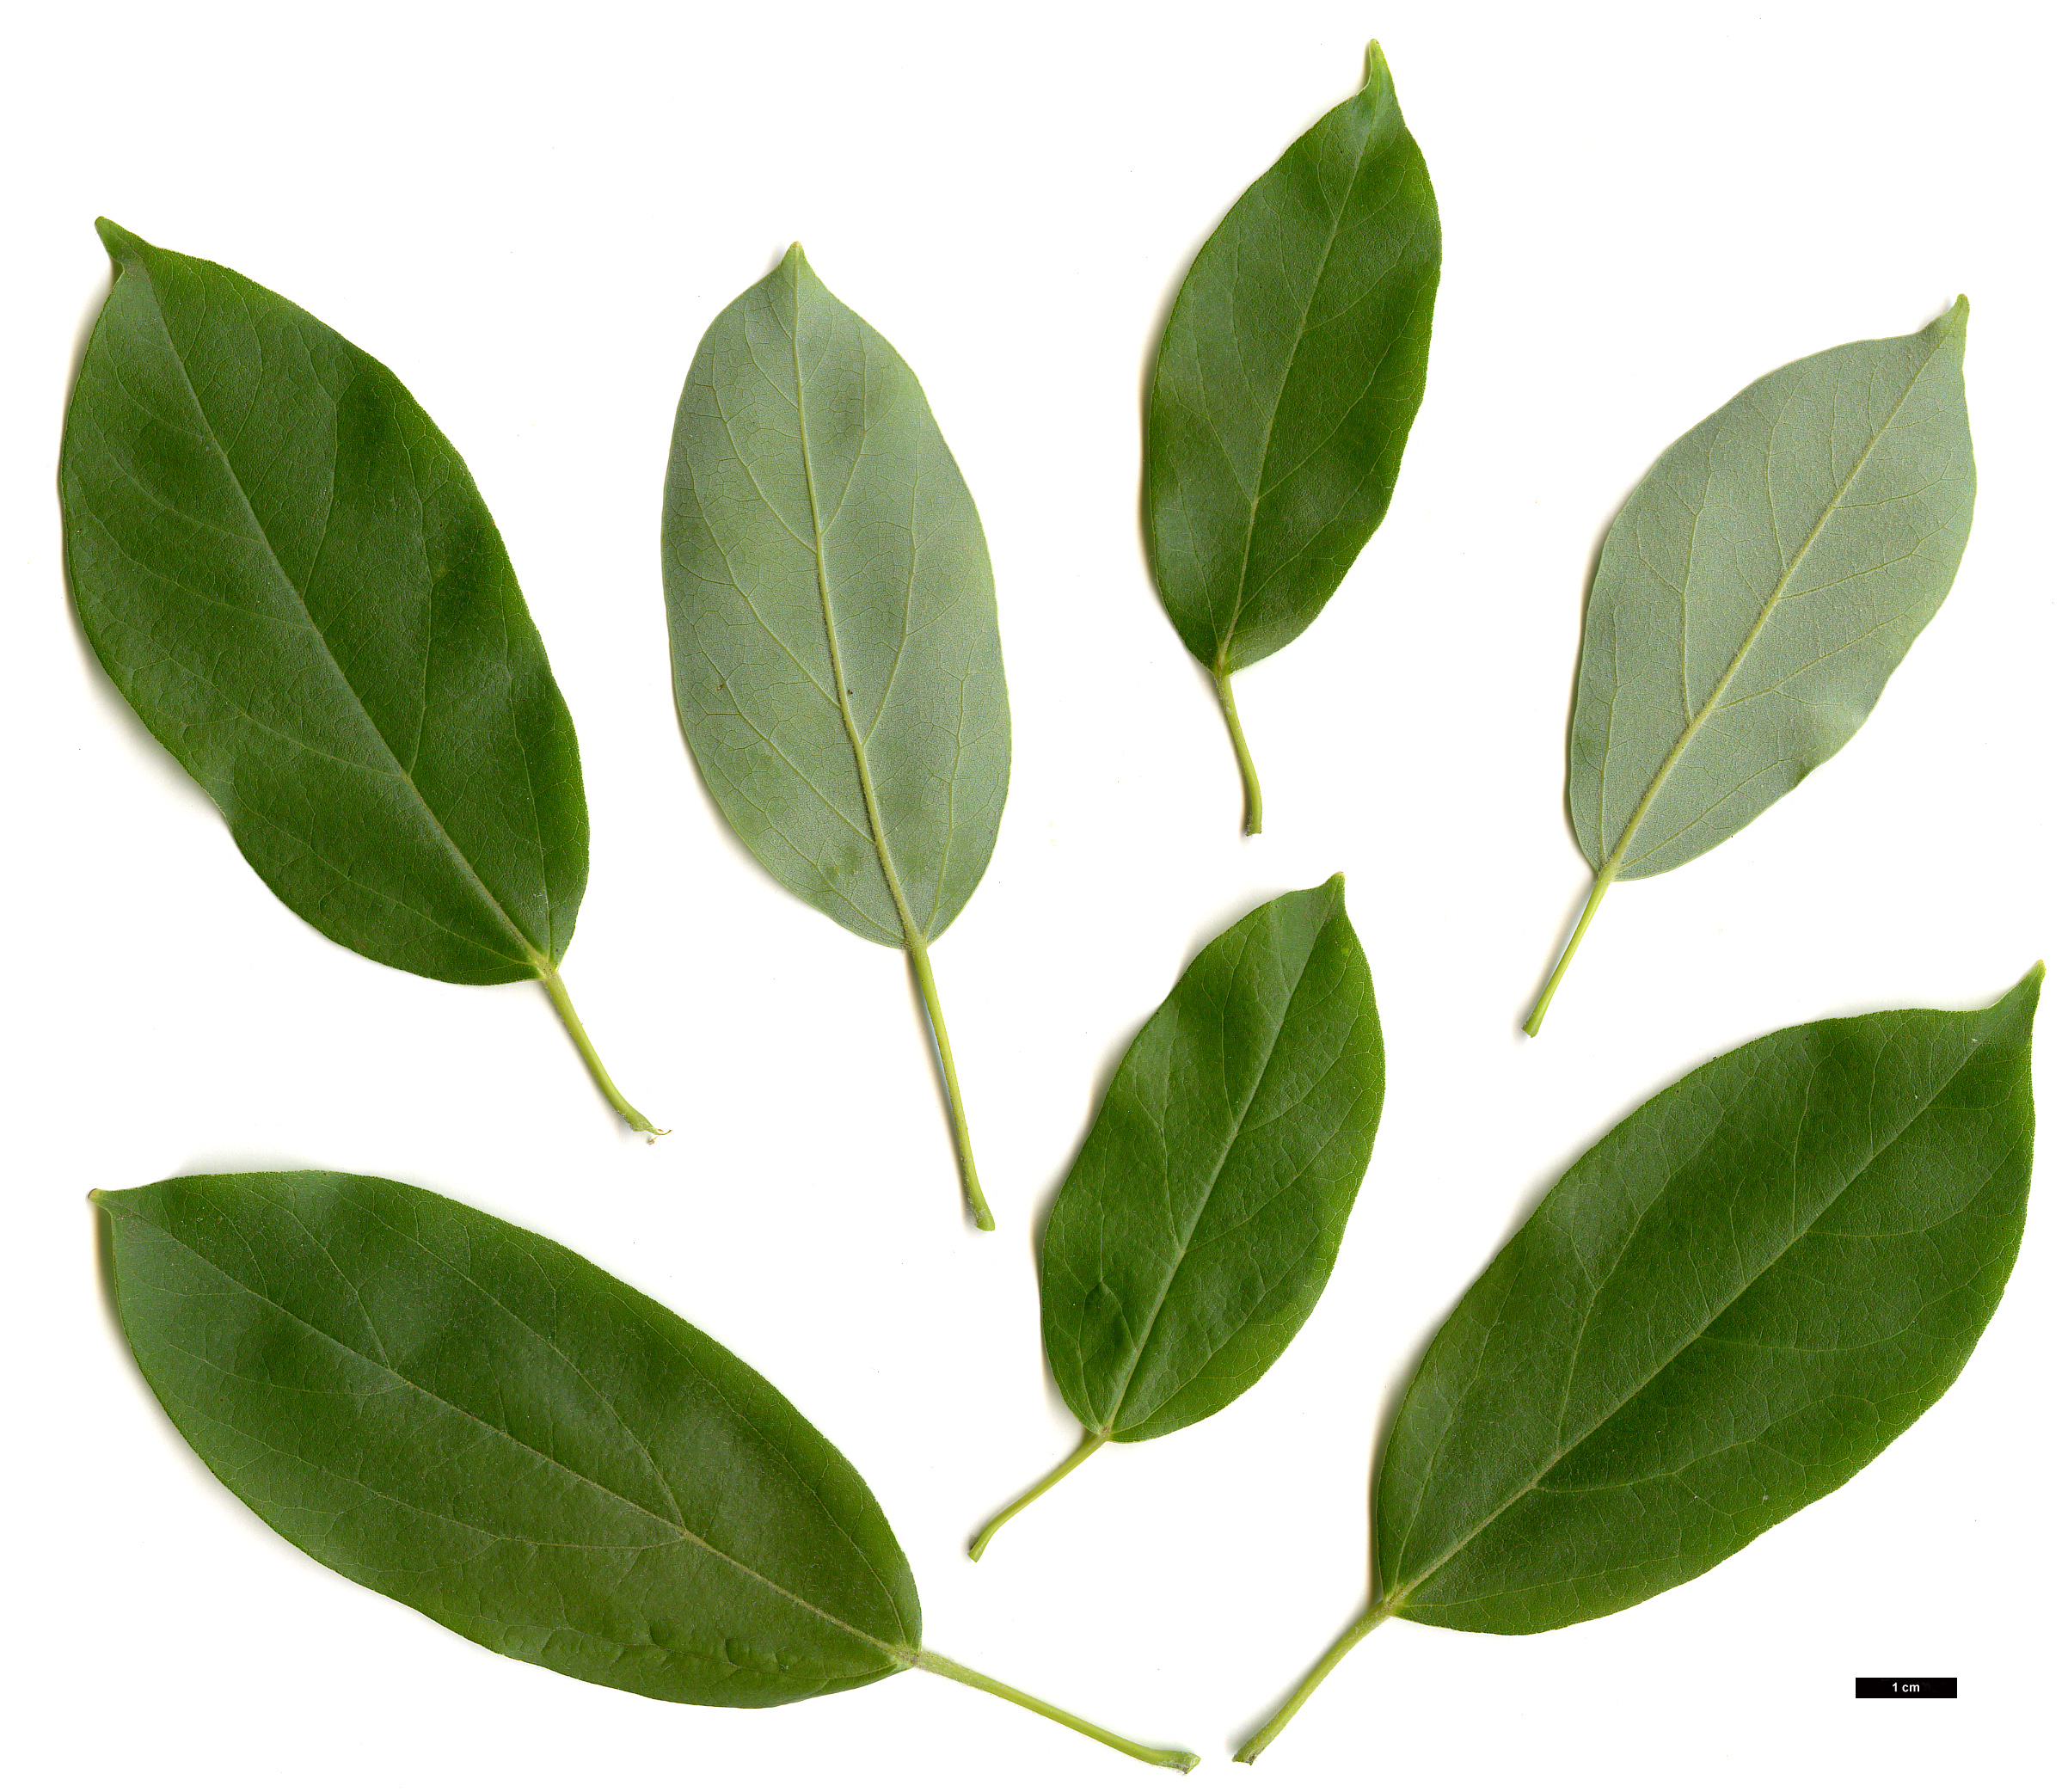 High resolution image: Family: Sapindaceae - Genus: Acer - Taxon: coriaceifolium